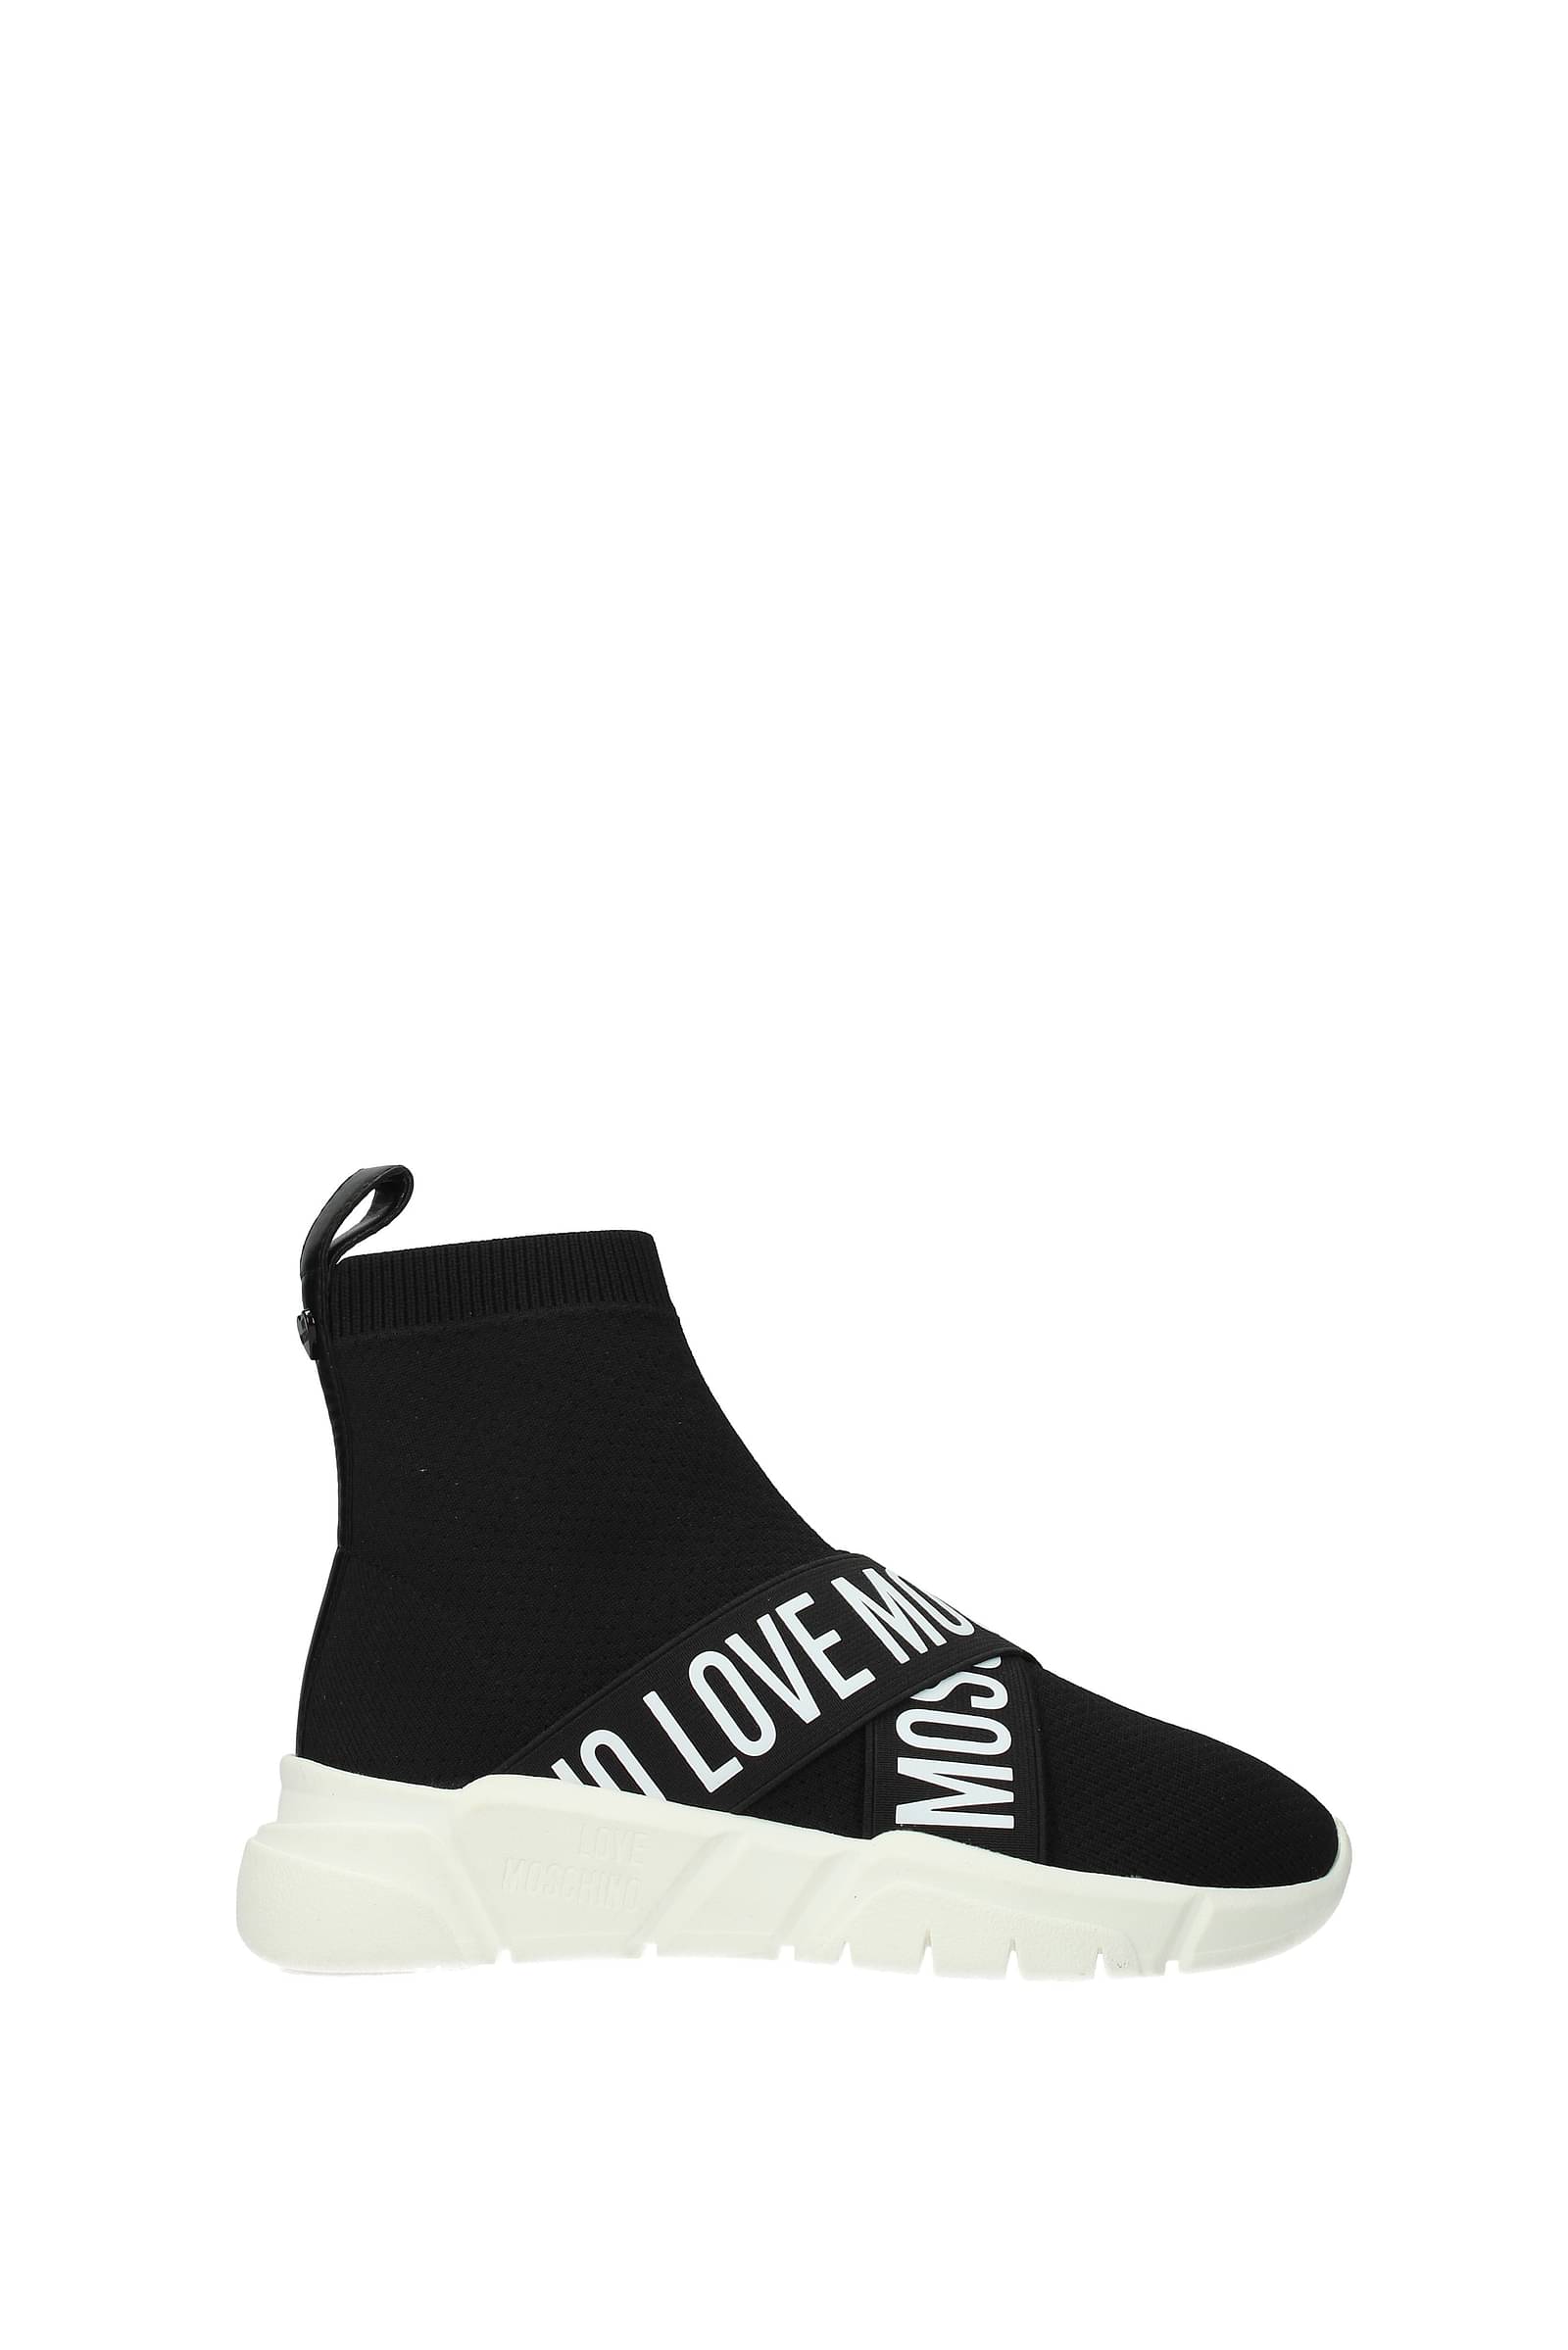 Love Moschino Sneakers Women JA15033G1DIZ0000 Fabric 148,5€